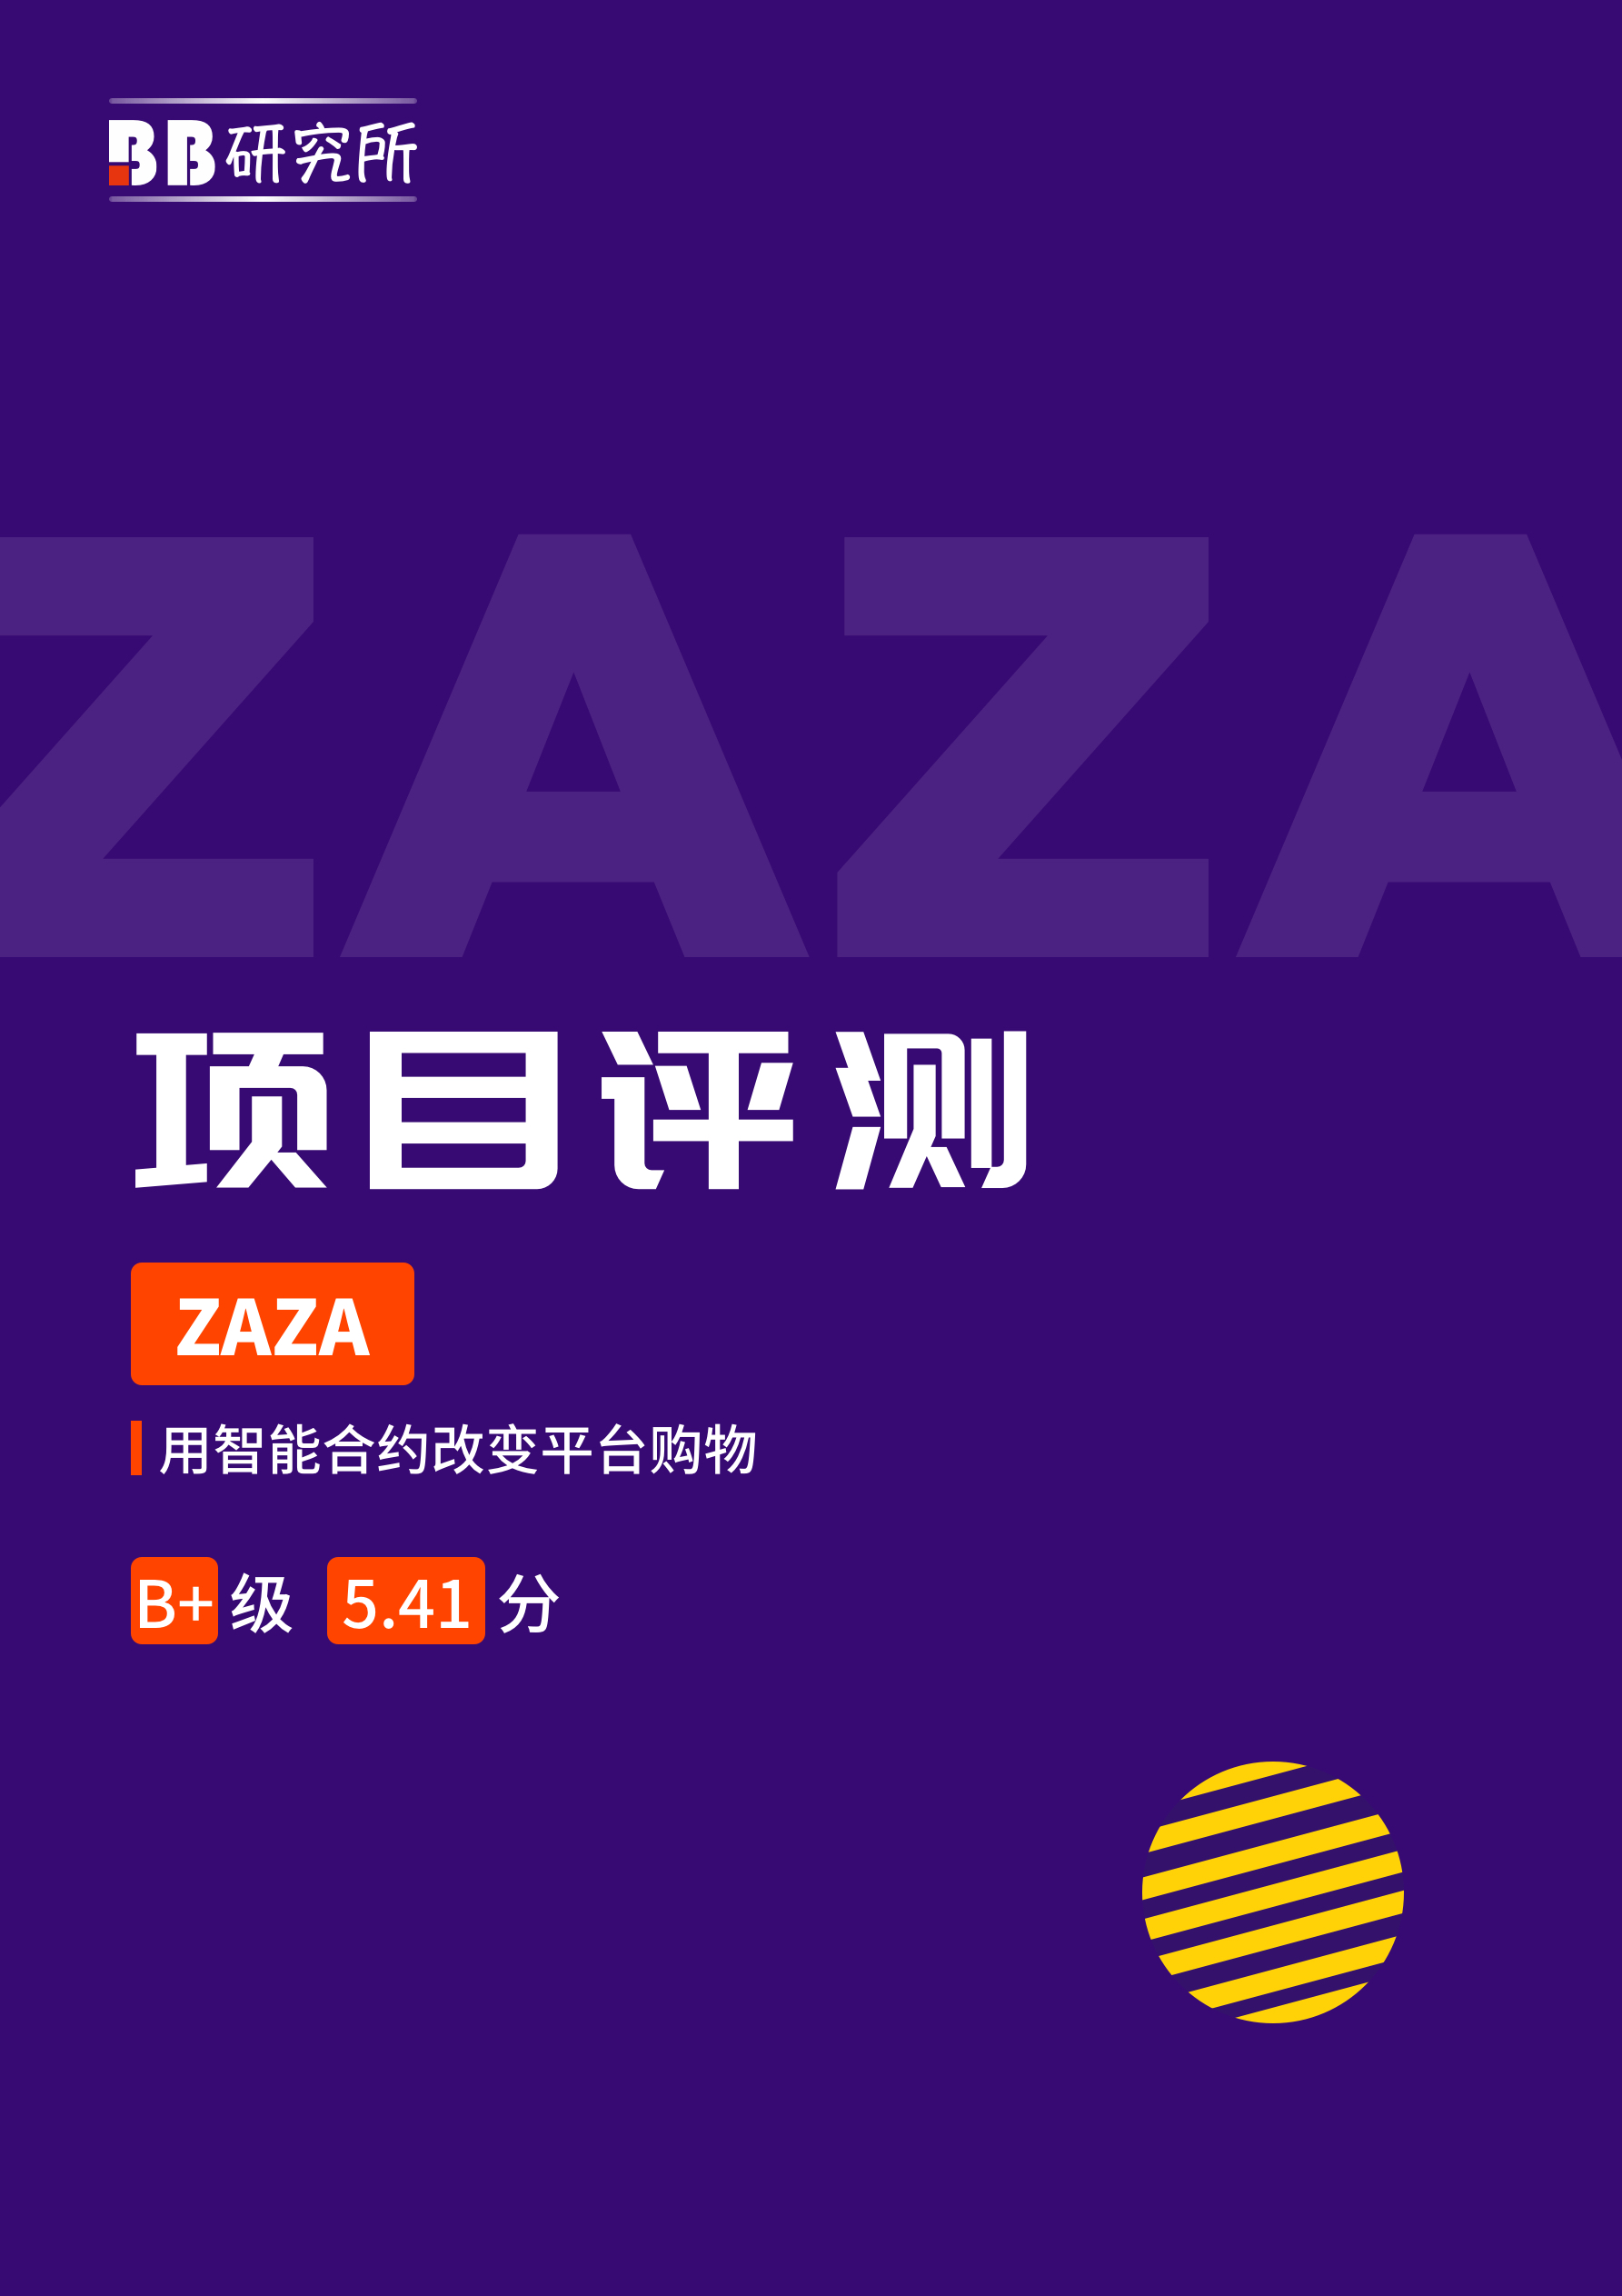 项目评测丨ZAZA:B+级5.41分 用智能合约改变平台购物